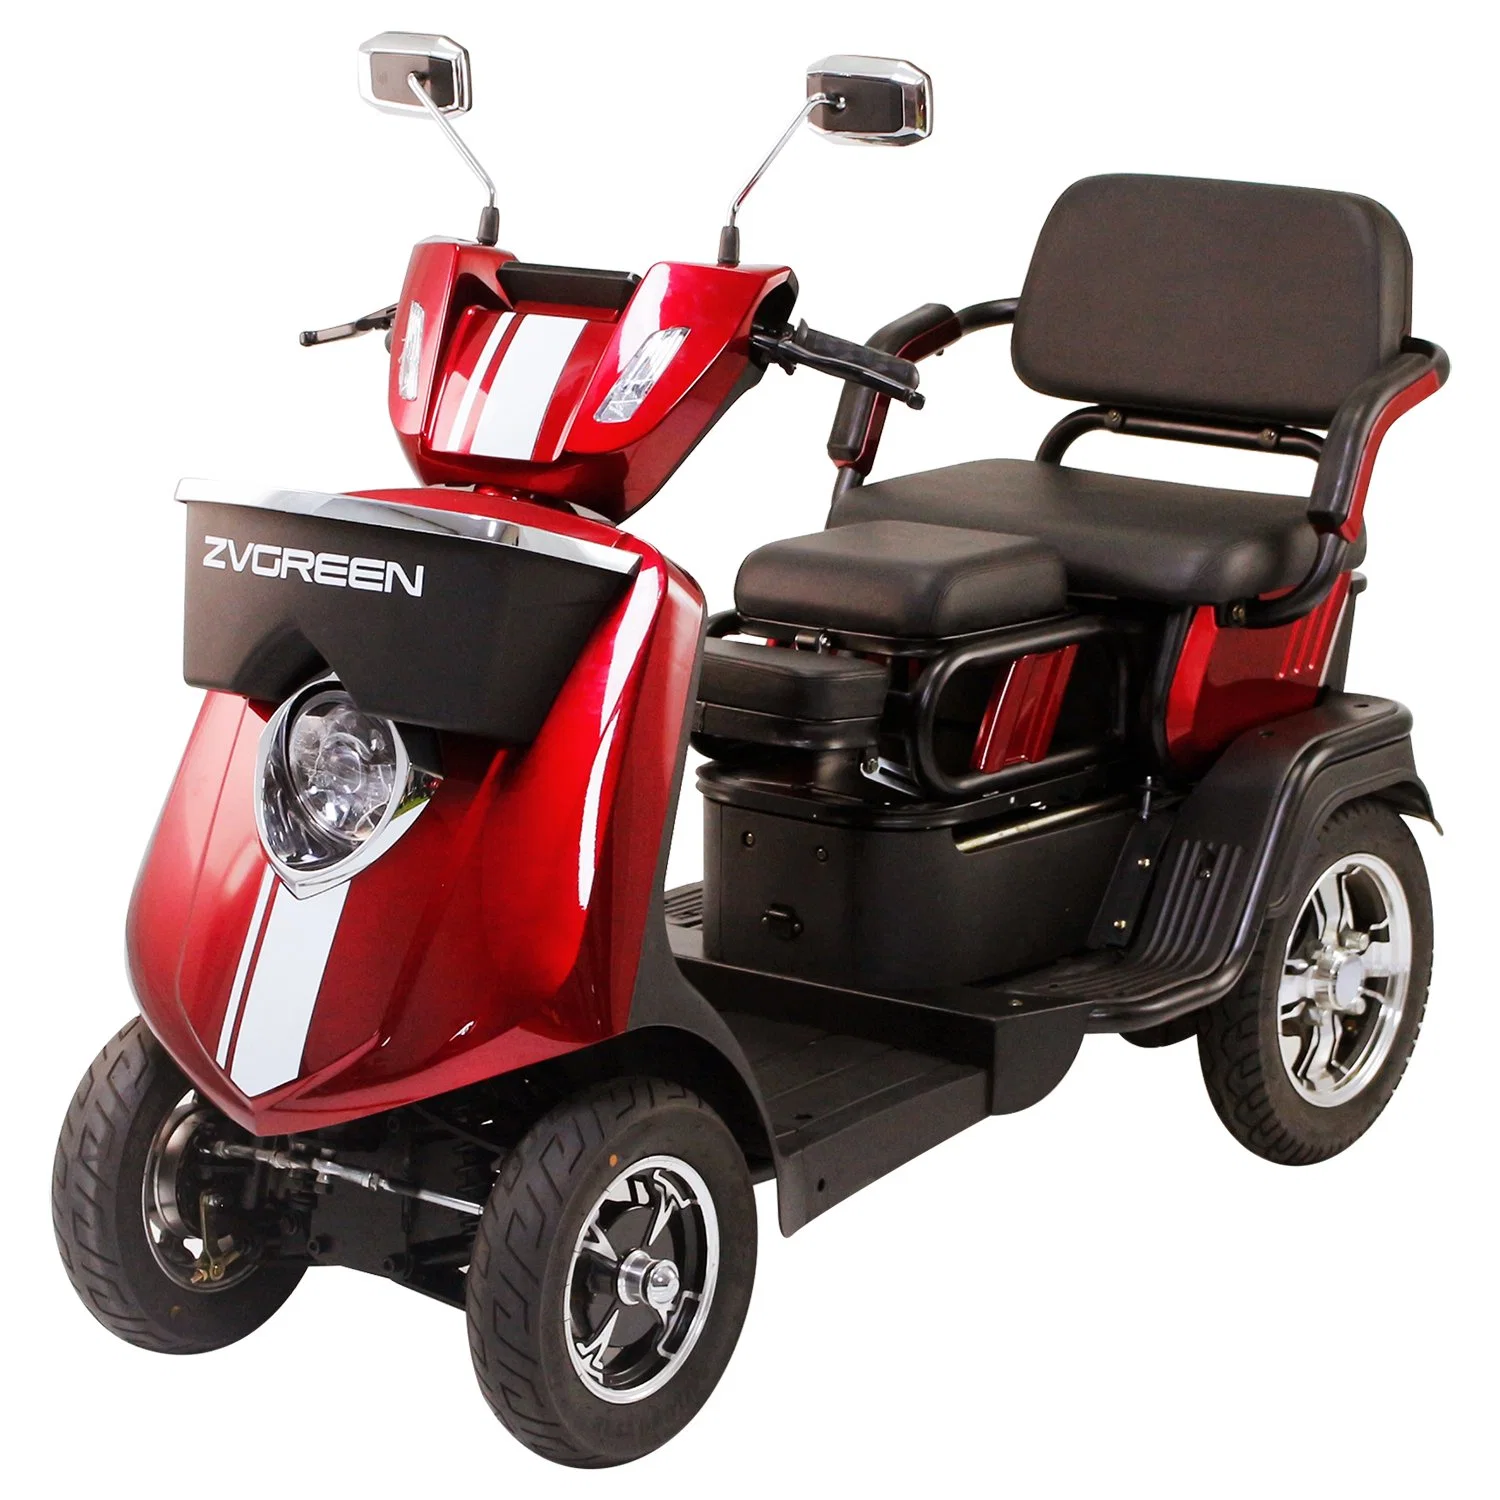 Für Behinderte Allrad für Behinderte Elektro-Mobilität Scooter